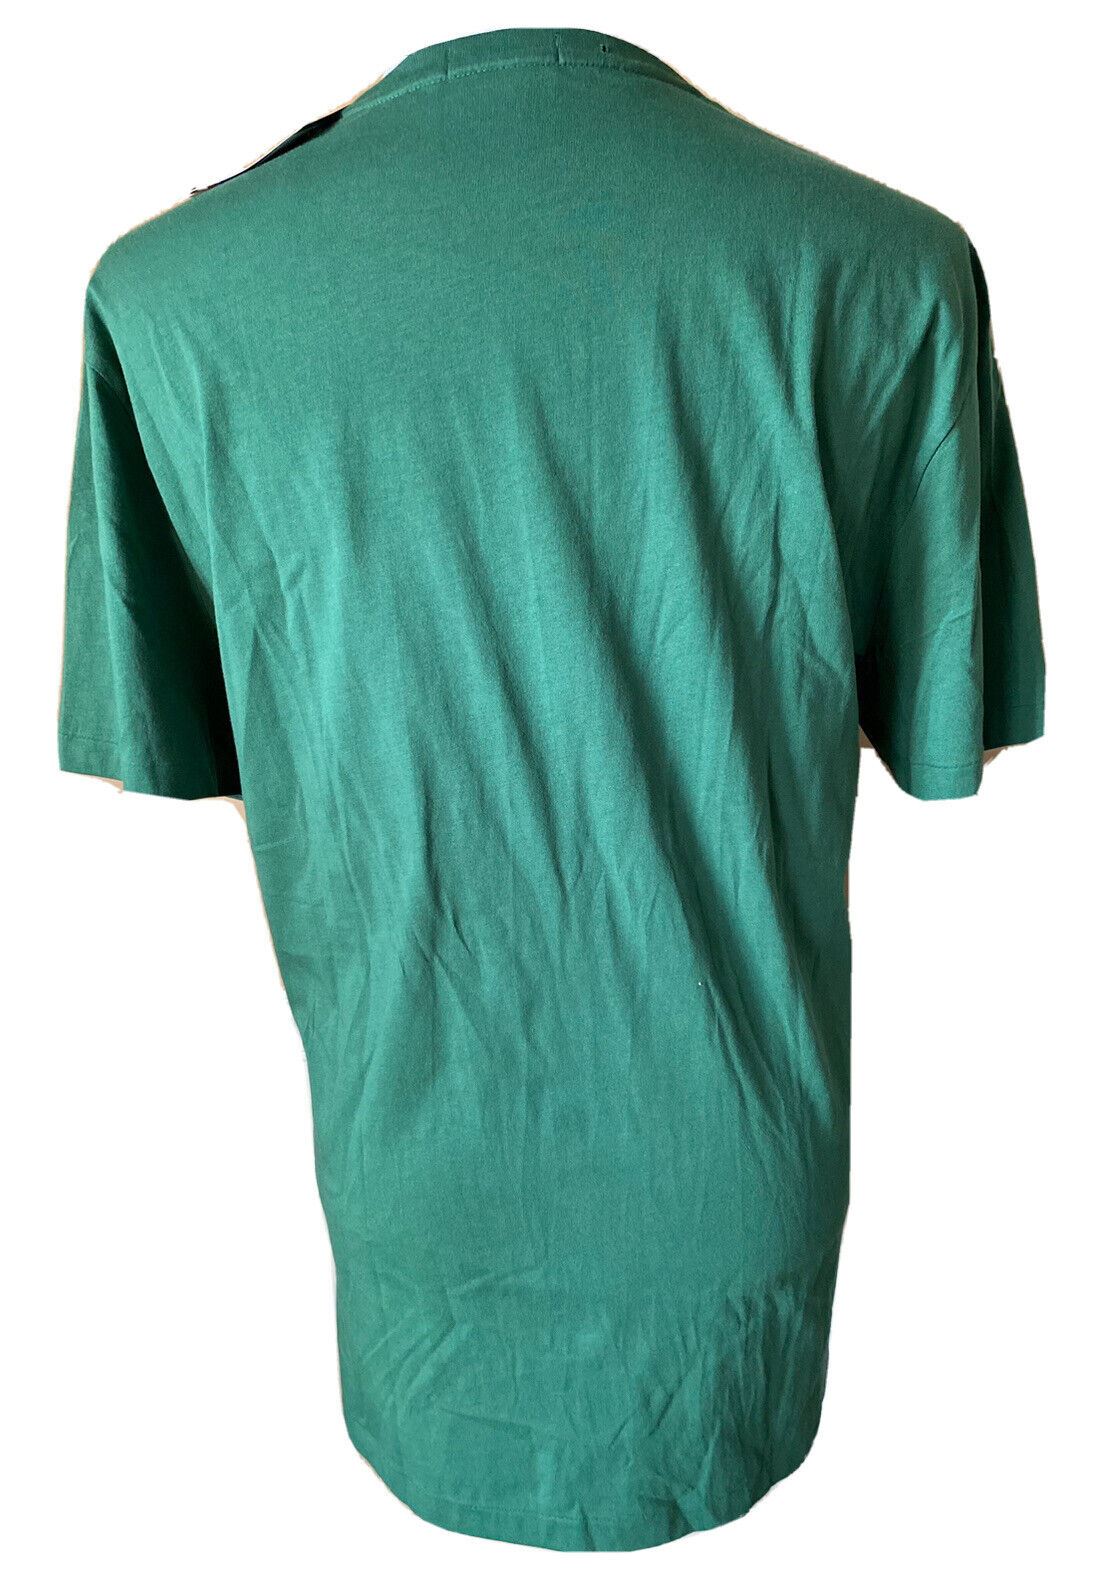 NWT Polo Ralph Lauren Bear T-Shirt Green XL/TG